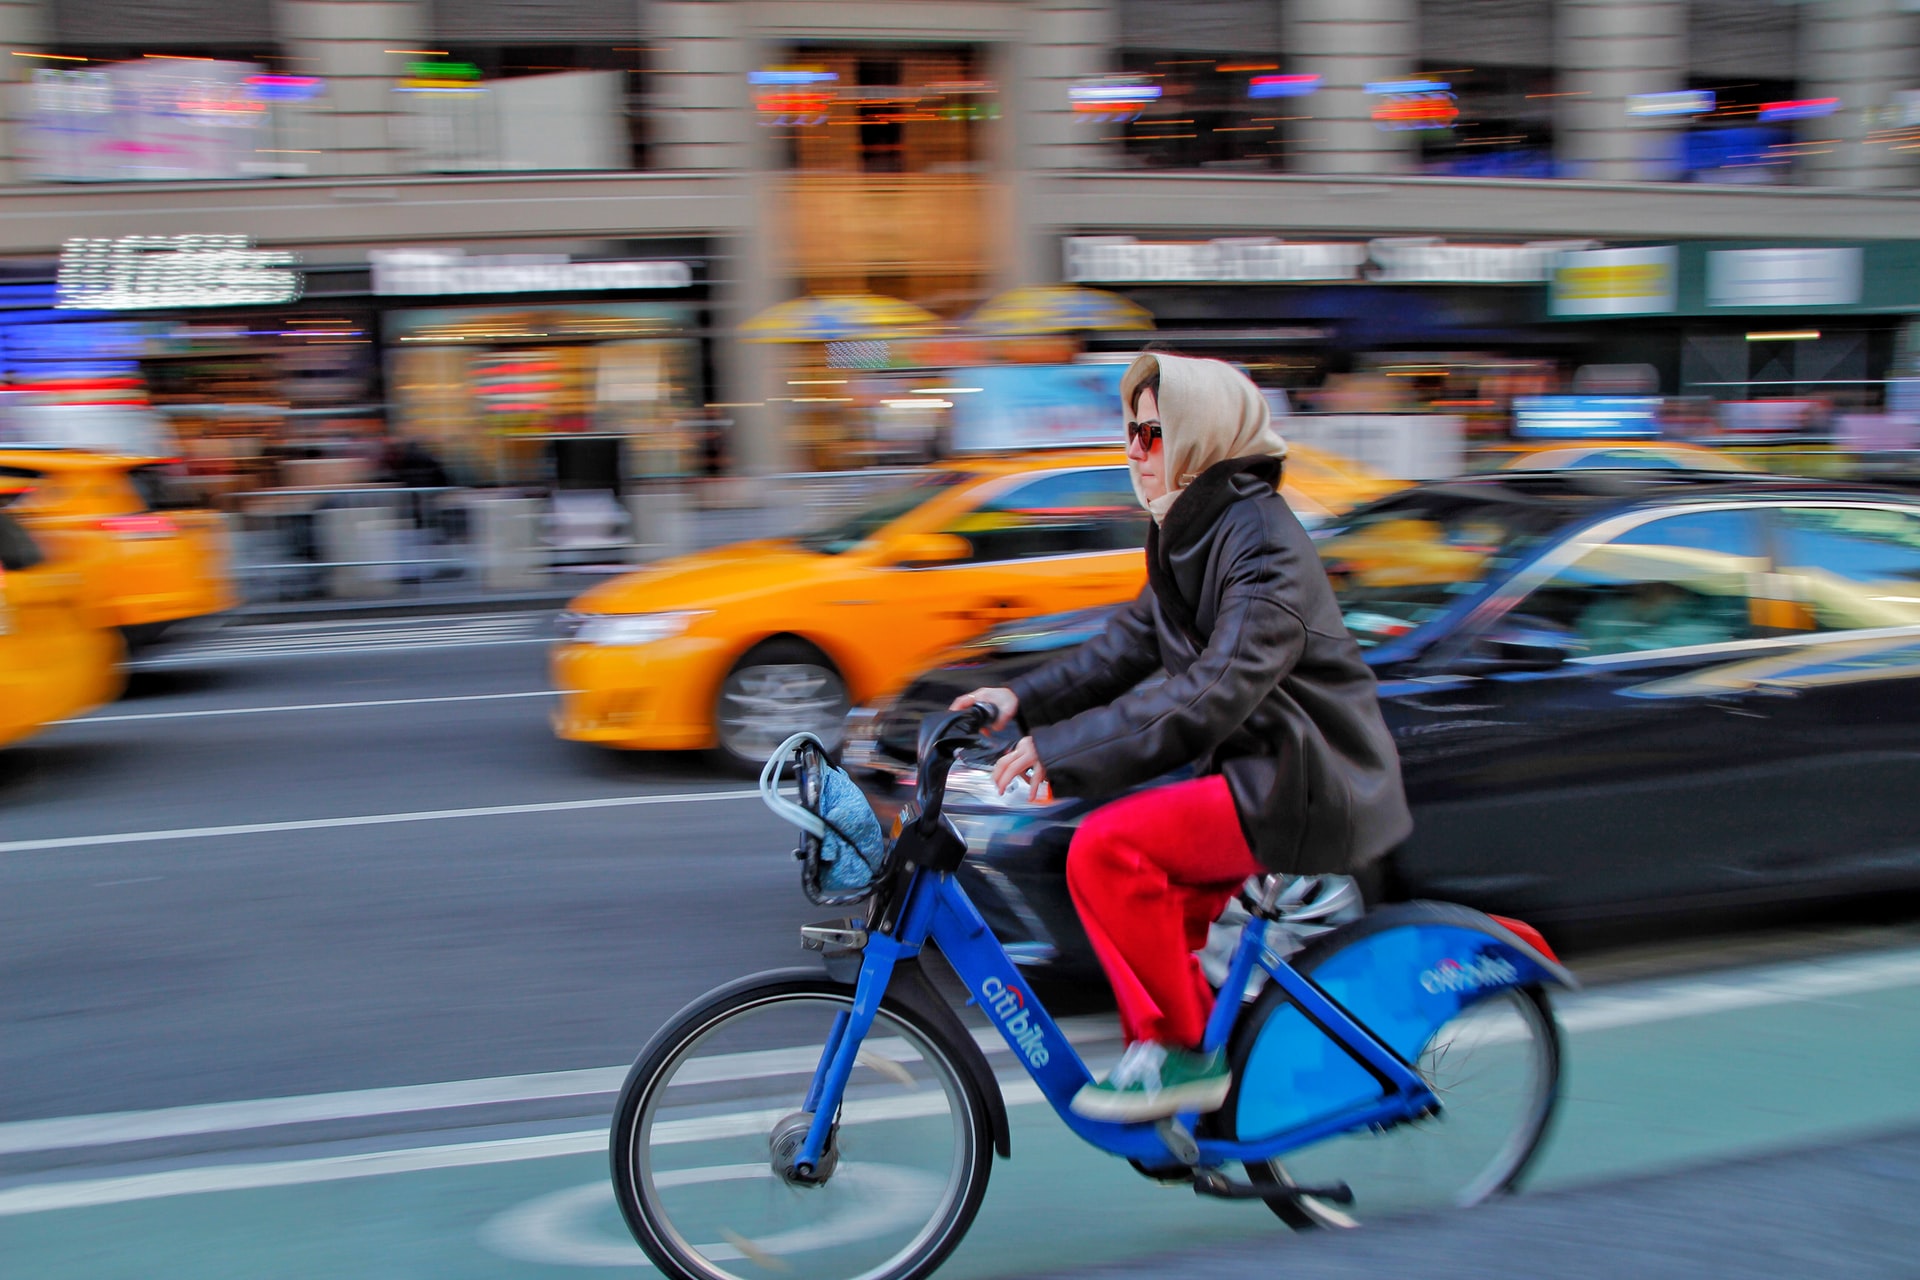 Could cameras make urban bike lanes safer?